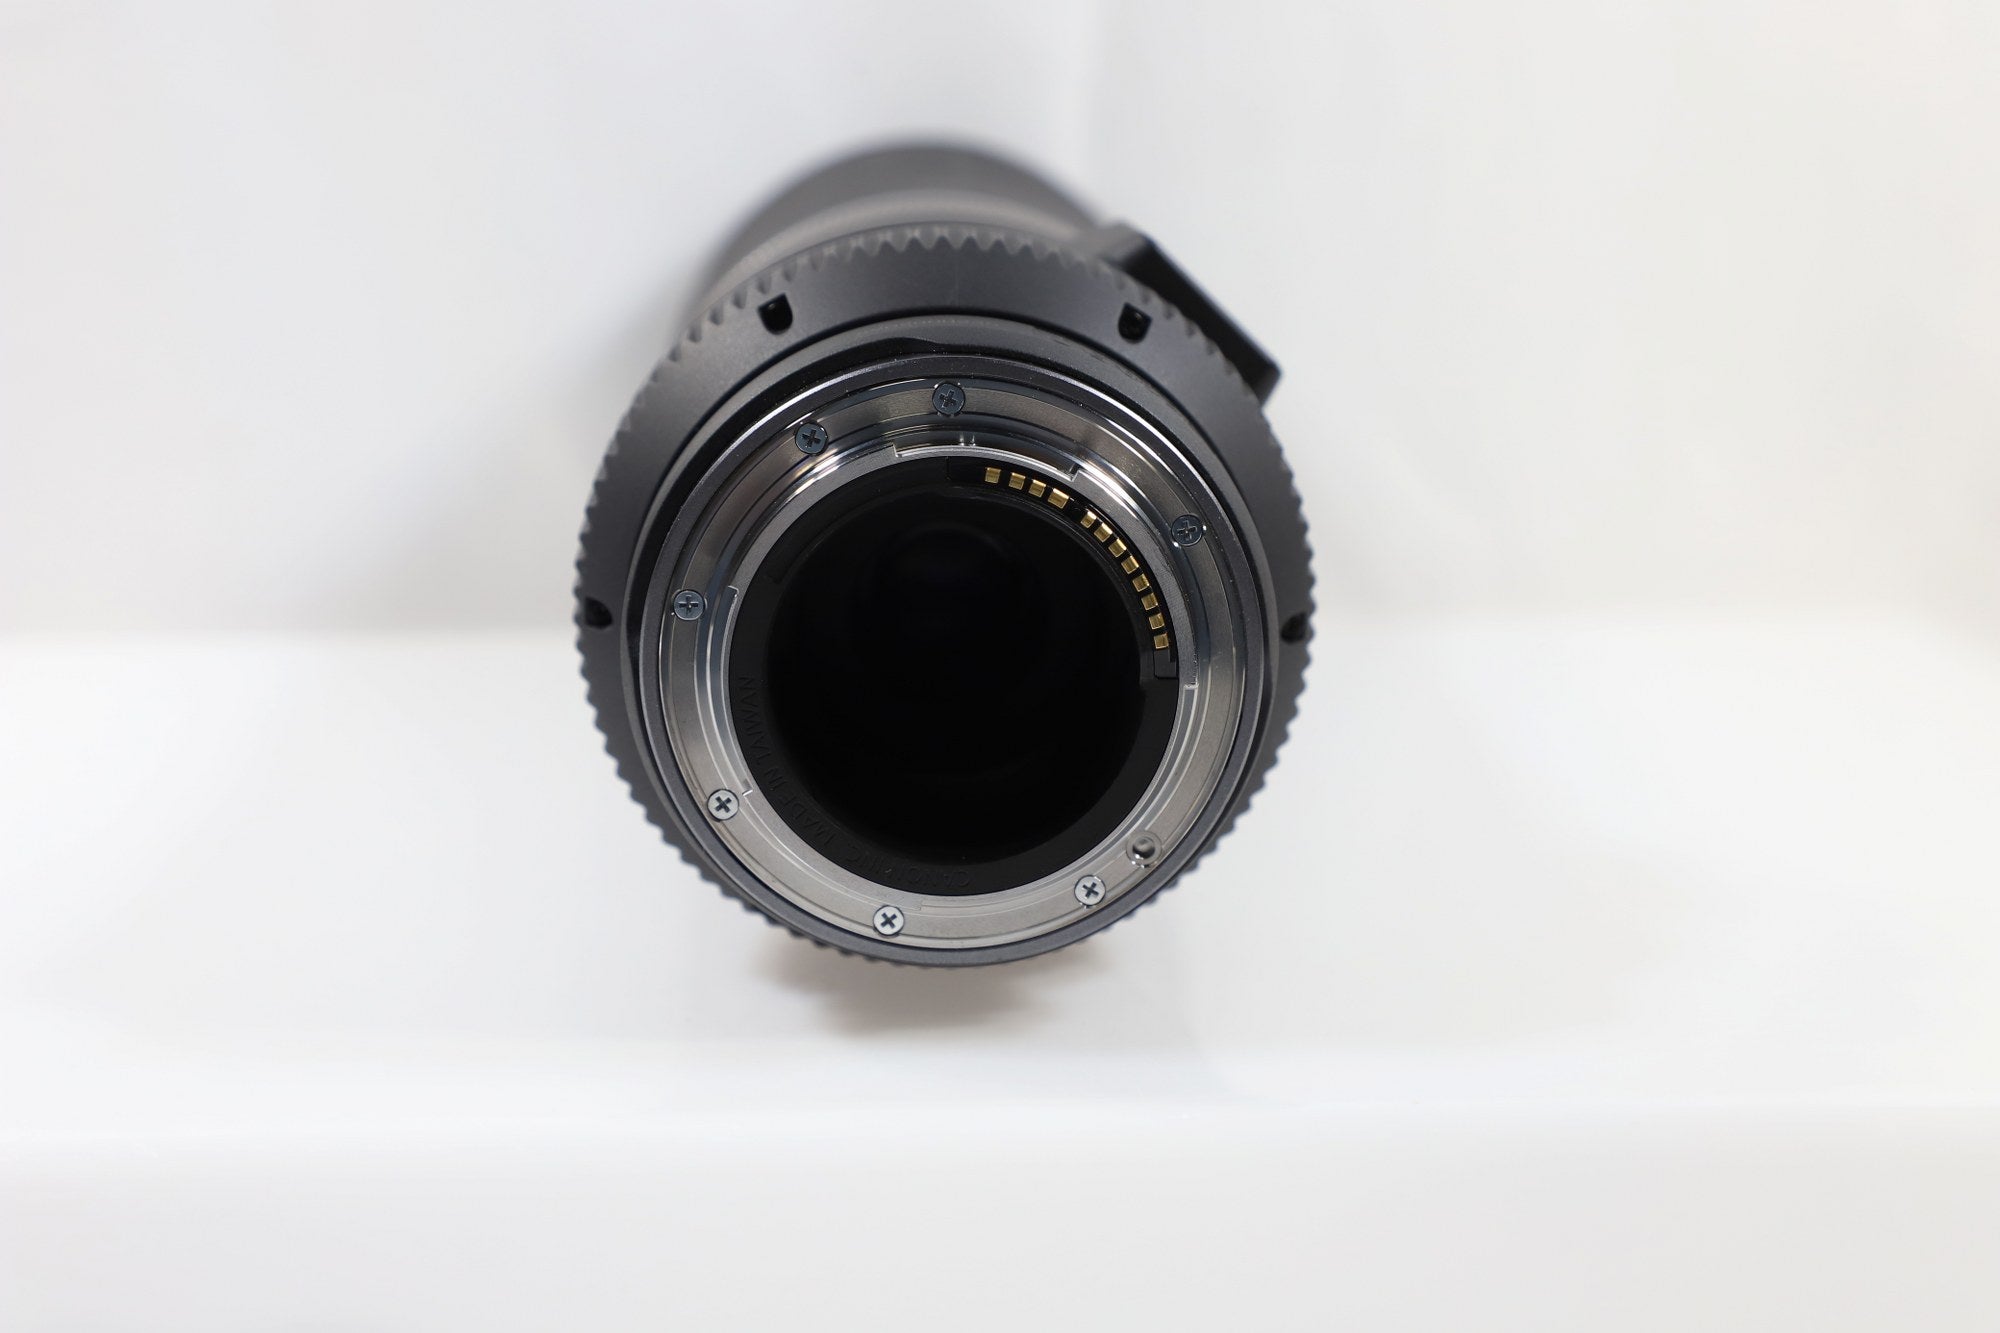 Canon RF 800mm f/11 IS STM Lens - RF-Mount Lens/Full-Frame Format - DOKAN